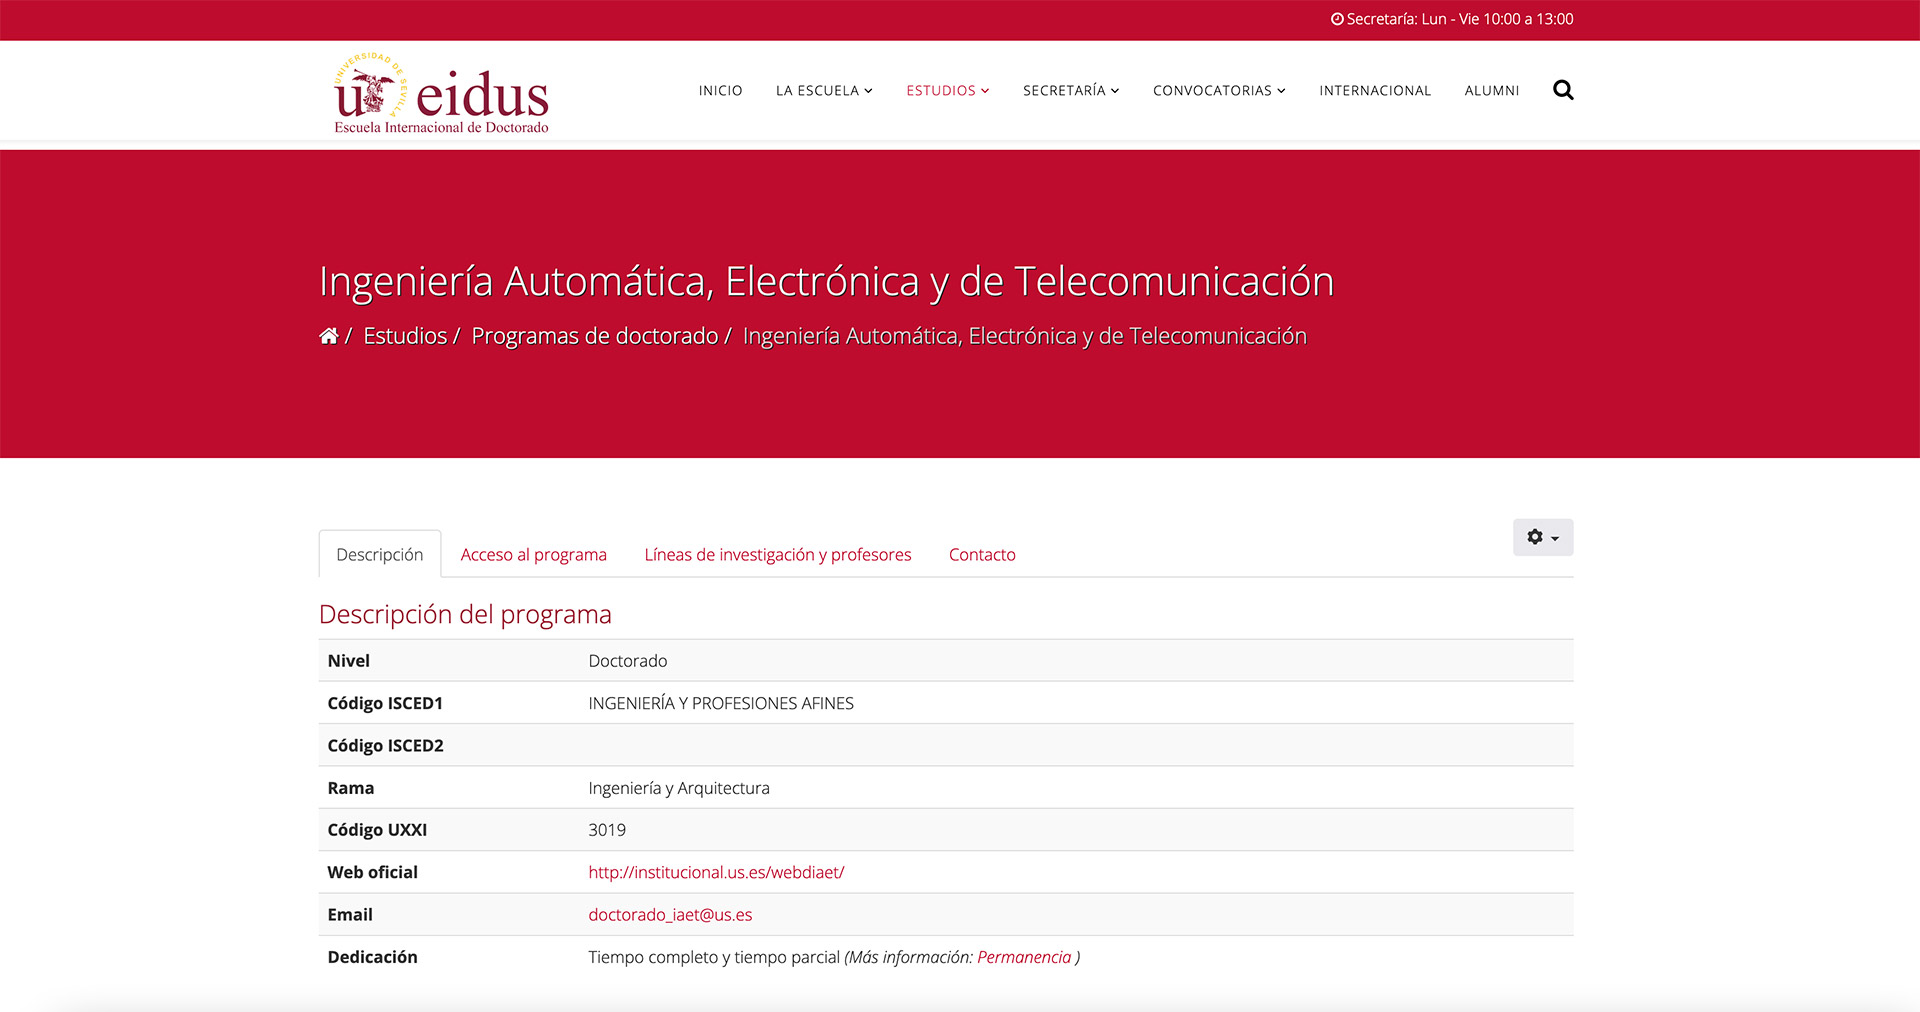 Doctorado en Ingeniería Automática, Electrónica y Telecomunicación | ETSi Sevilla